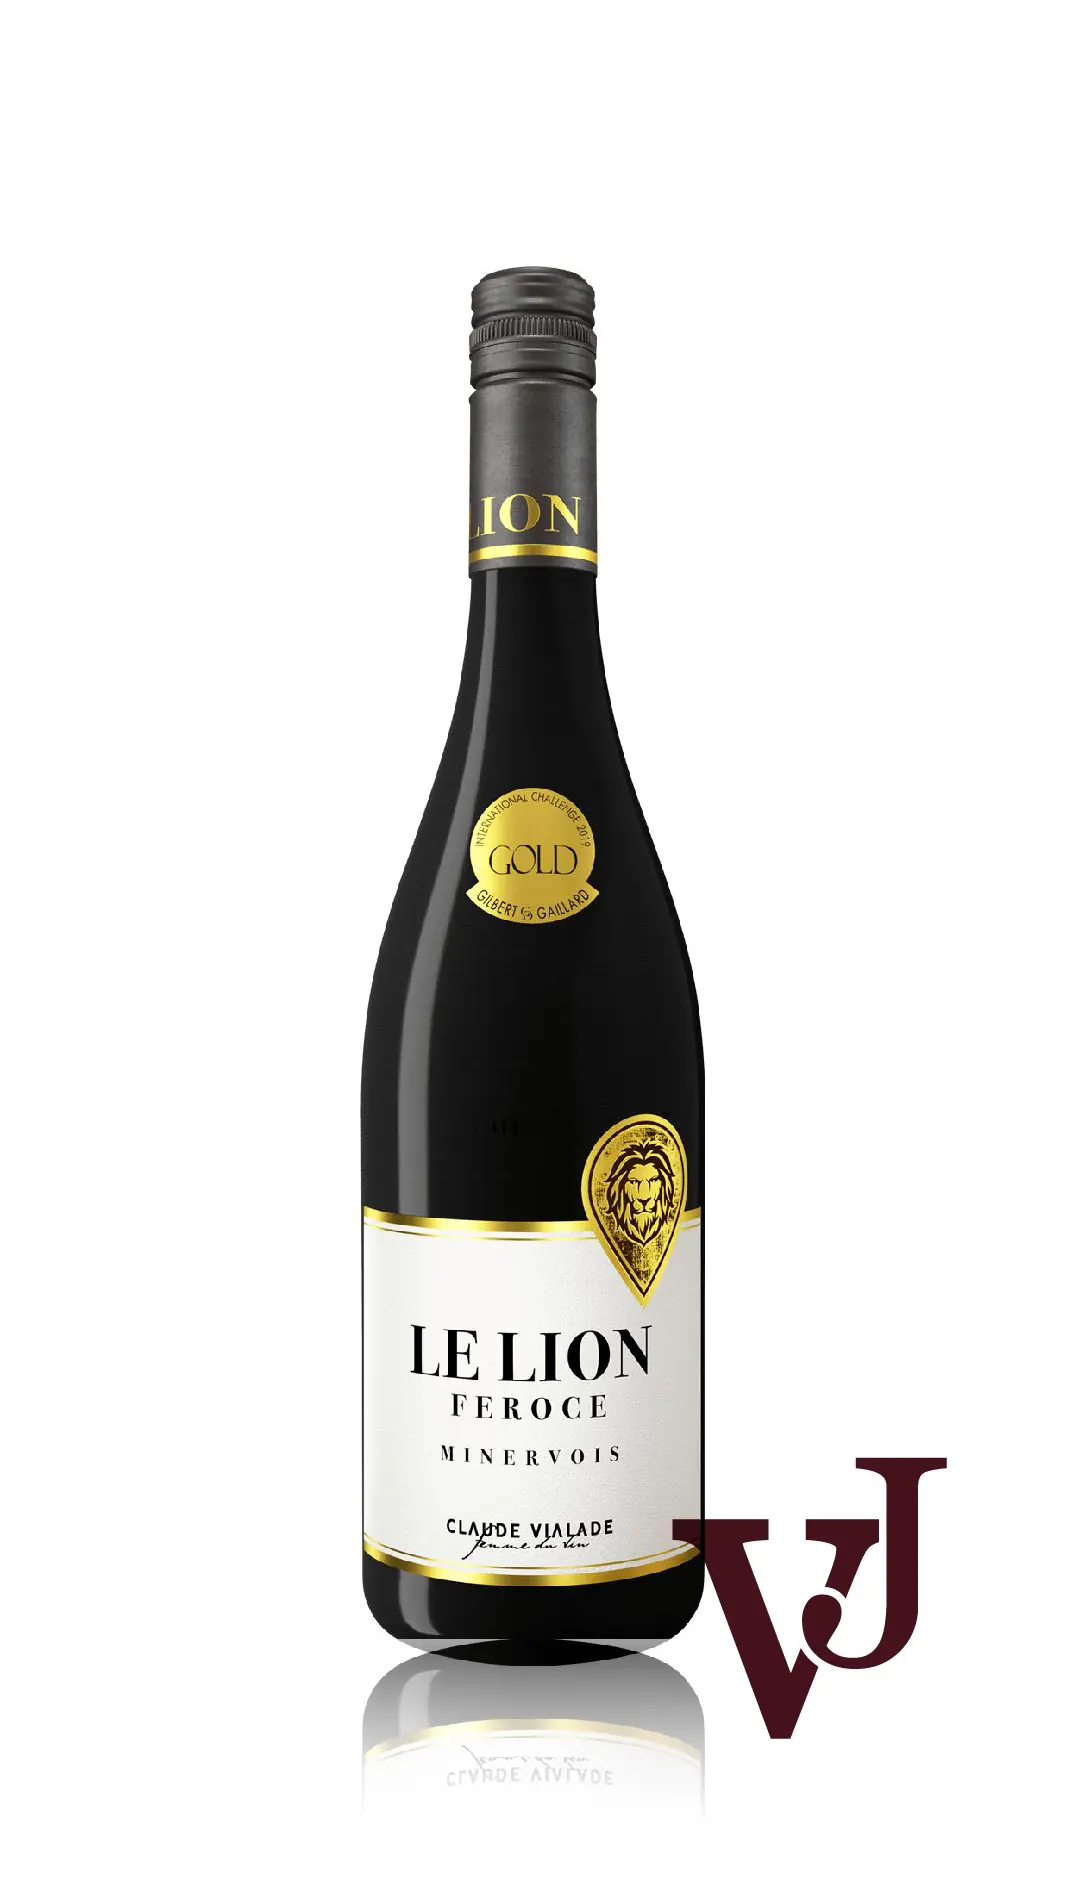 Rött Vin - Le Lion Féroce artikel nummer 2232401 från producenten Sarl Vignobles Plaza Tedaldi från området Frankrike - Vinjournalen.se